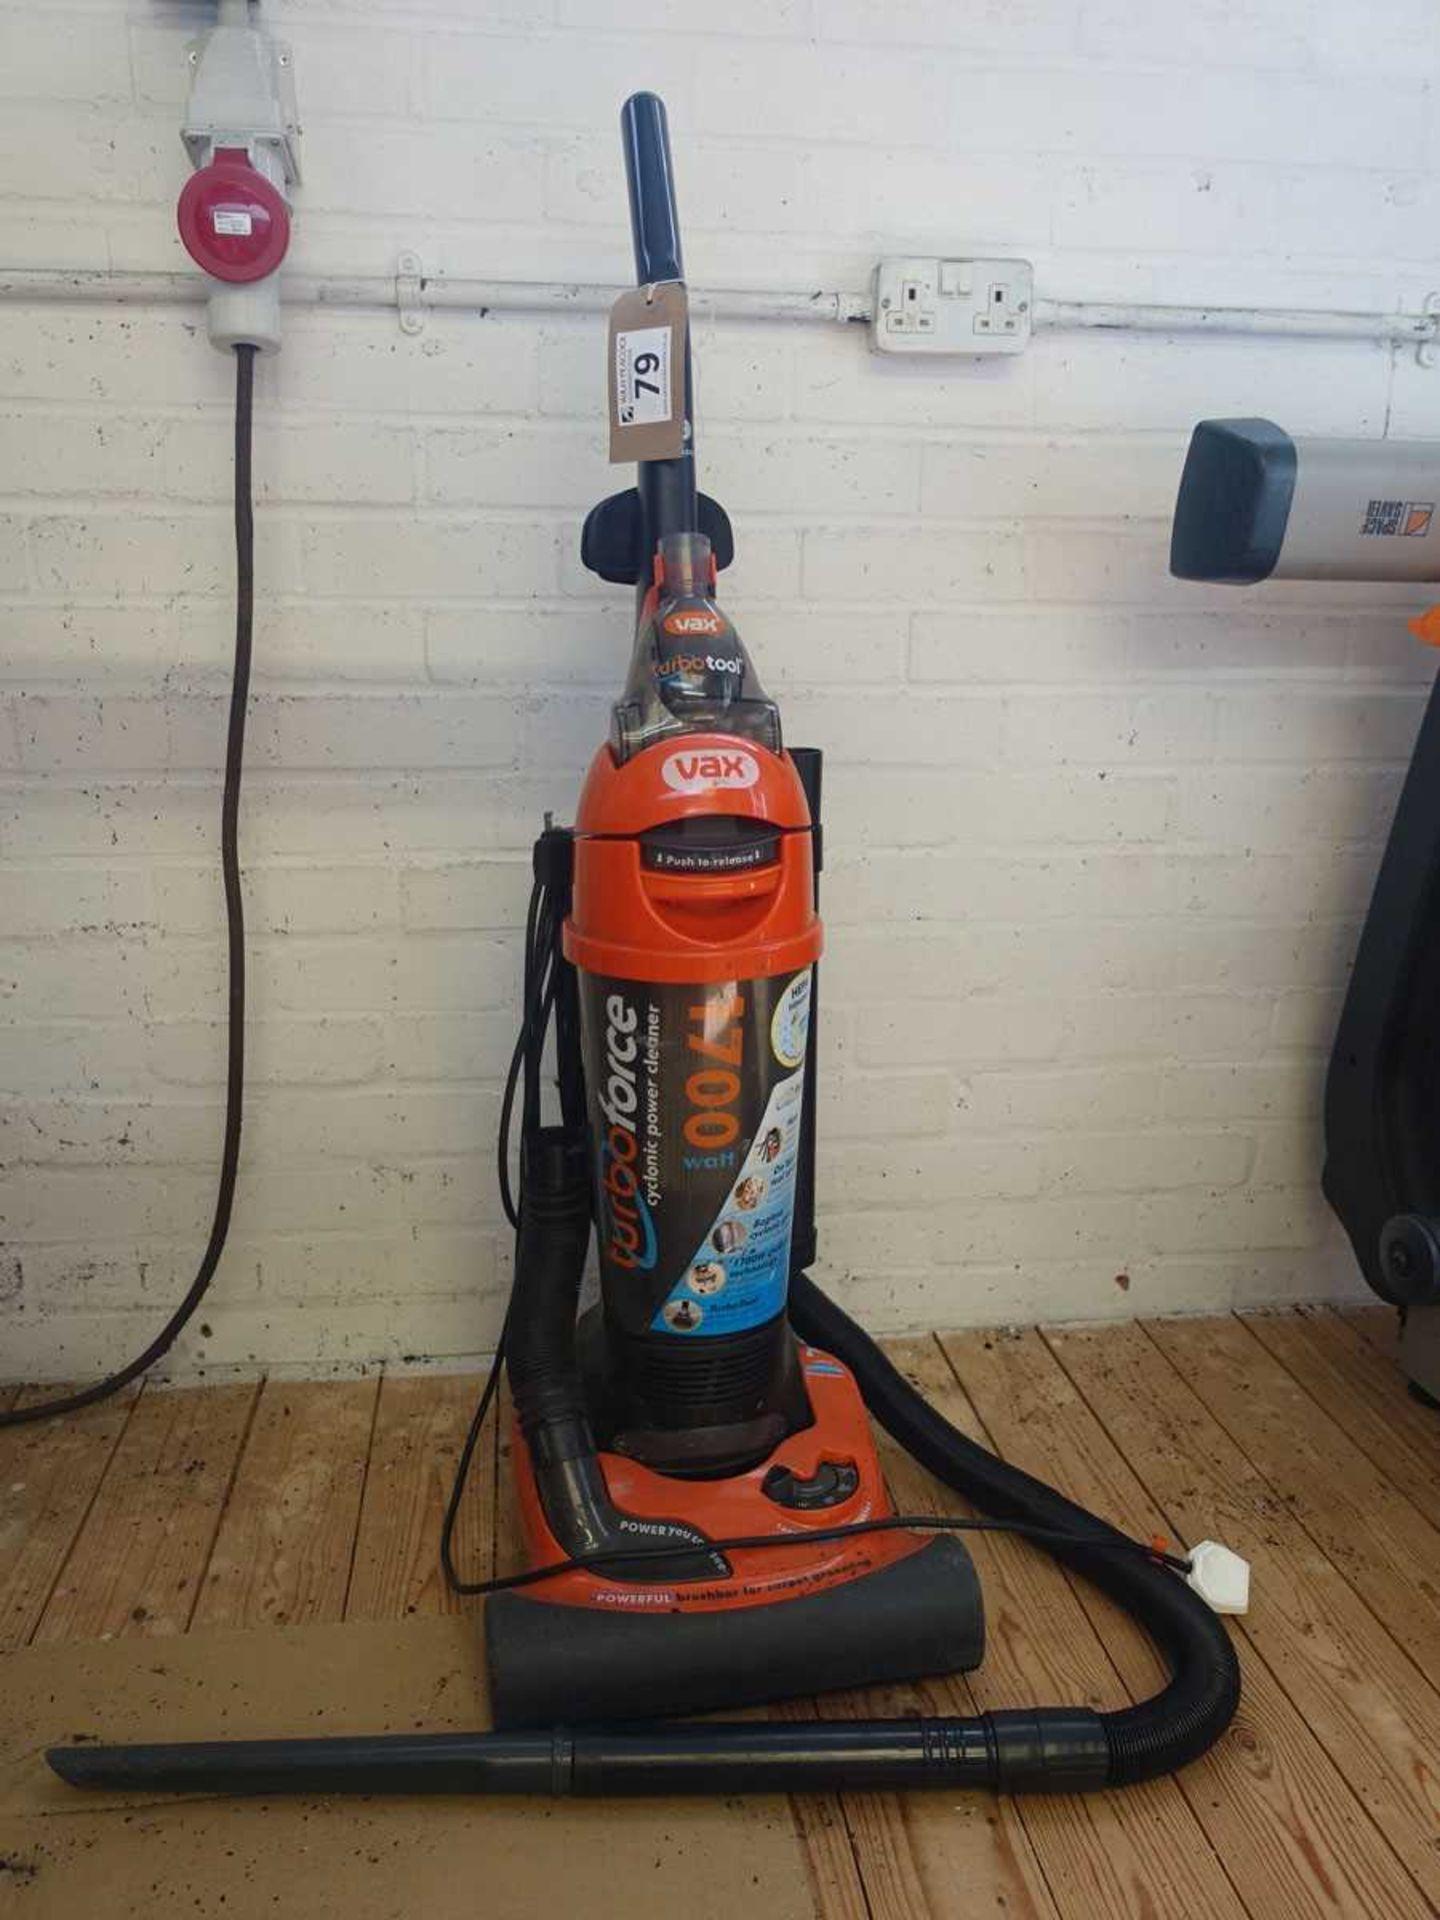 +VAT Vax Turbo Tool upright vacuum cleaner (On mezzanine) - Image 2 of 2